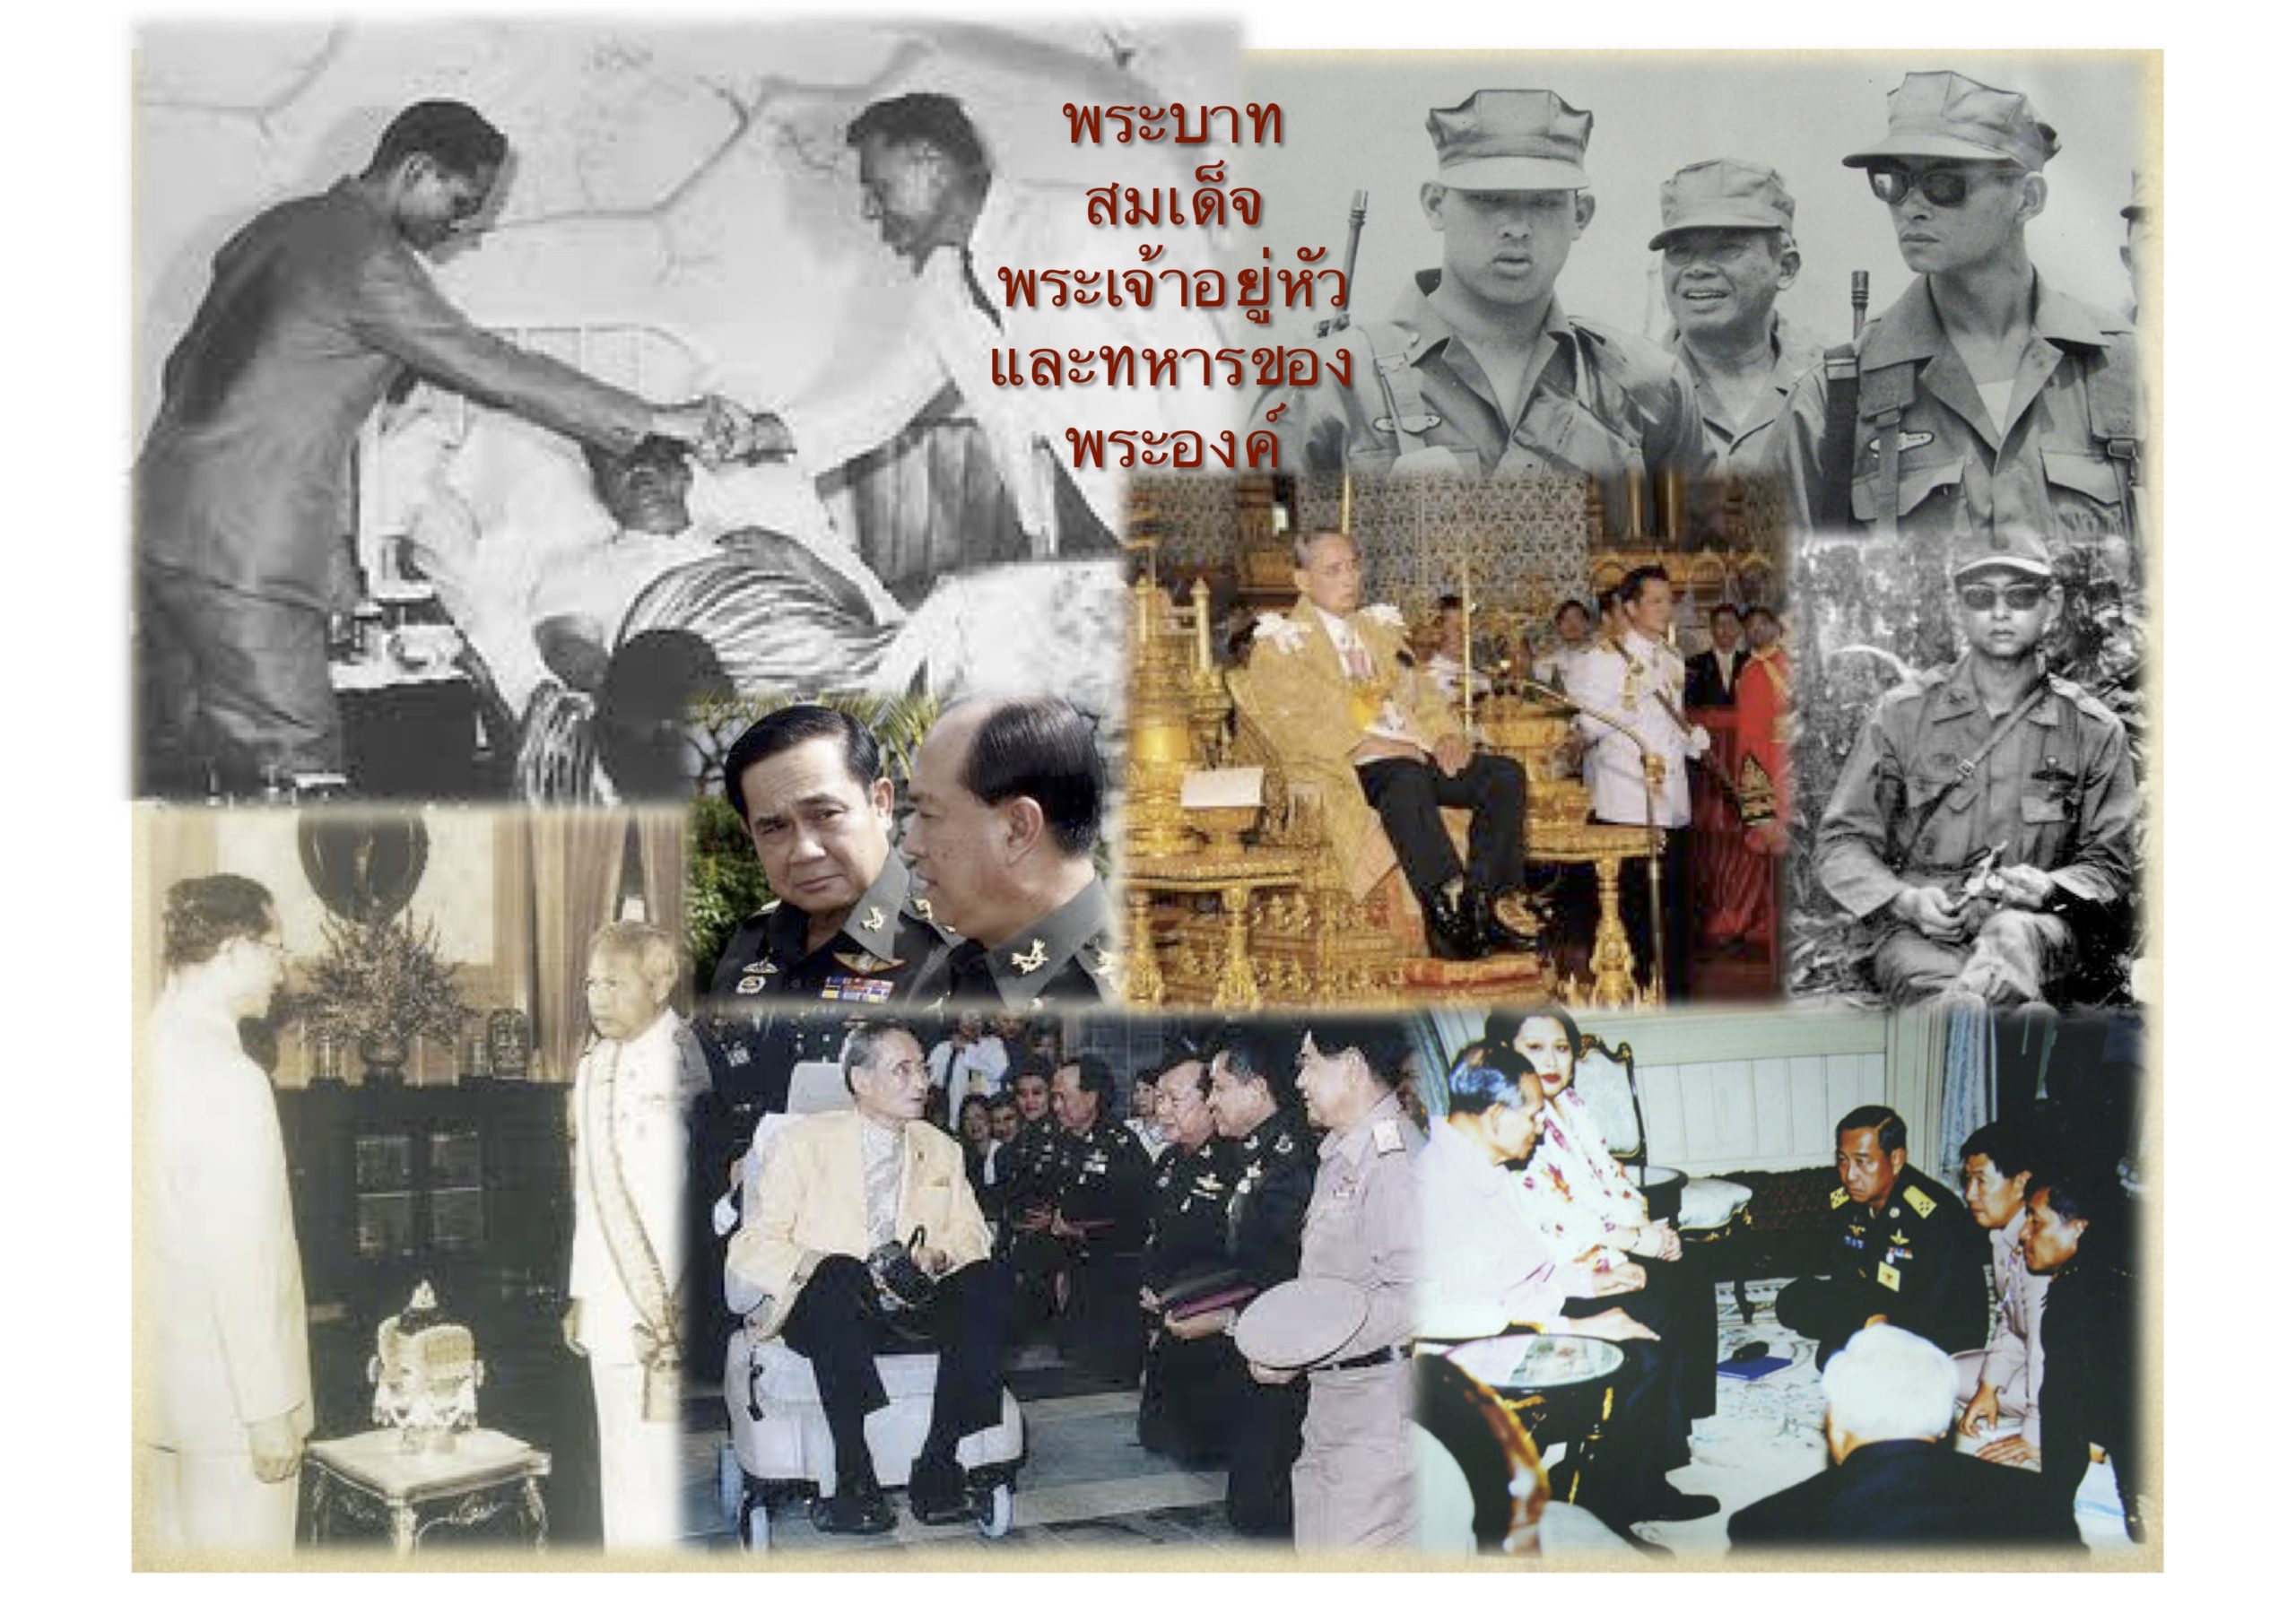 ทบทวนด้วยภาพ “เบื้องหลังวิกฤติประเทศไทย  – Behind the Thai Crisis”